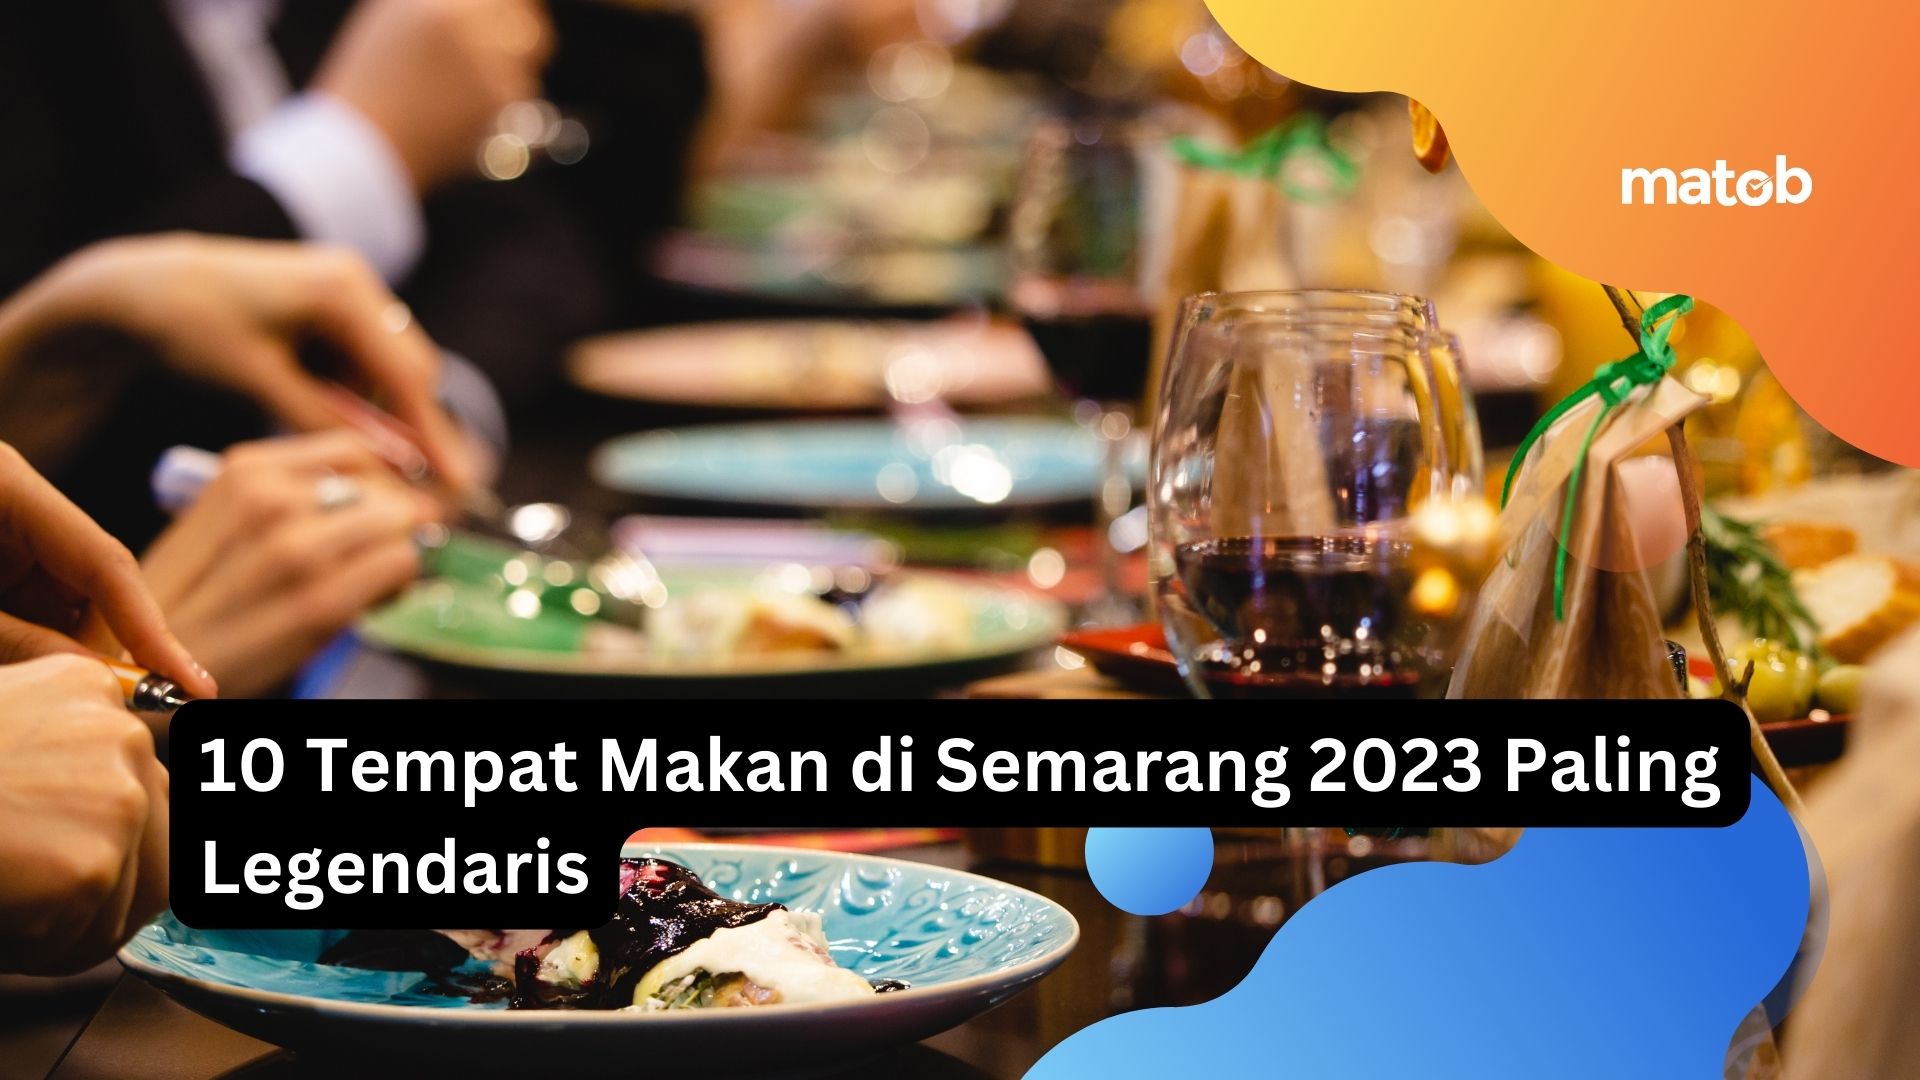 10 Tempat Makan di Semarang 2023 Paling Legendaris